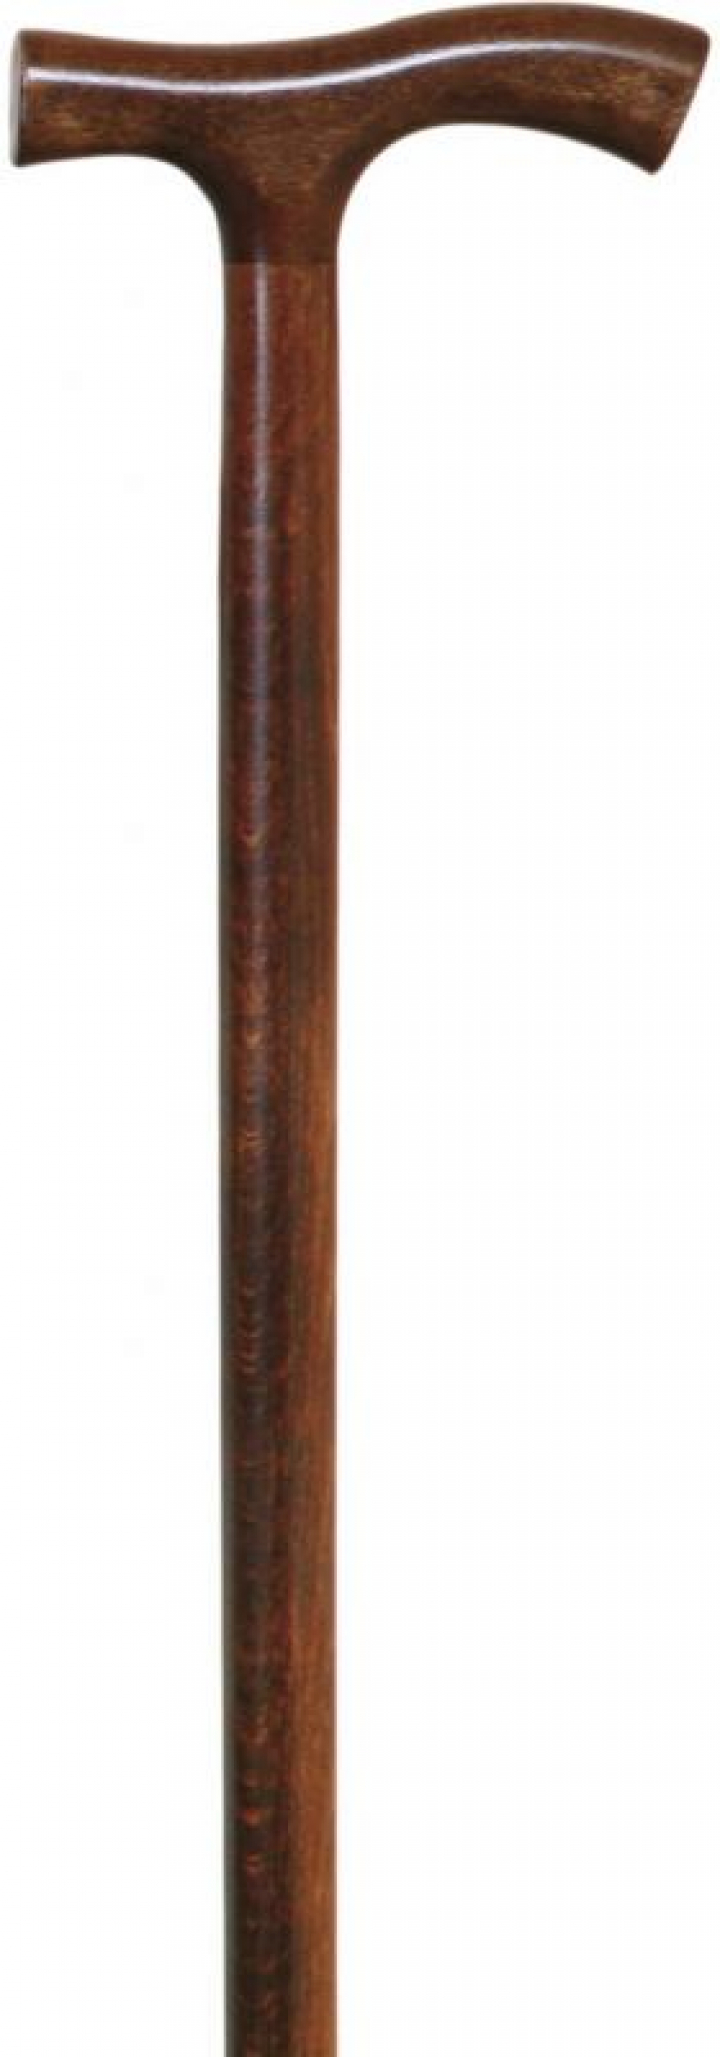 Bengala de madeira de cor castanha com punho em T sem anilha Ref.80